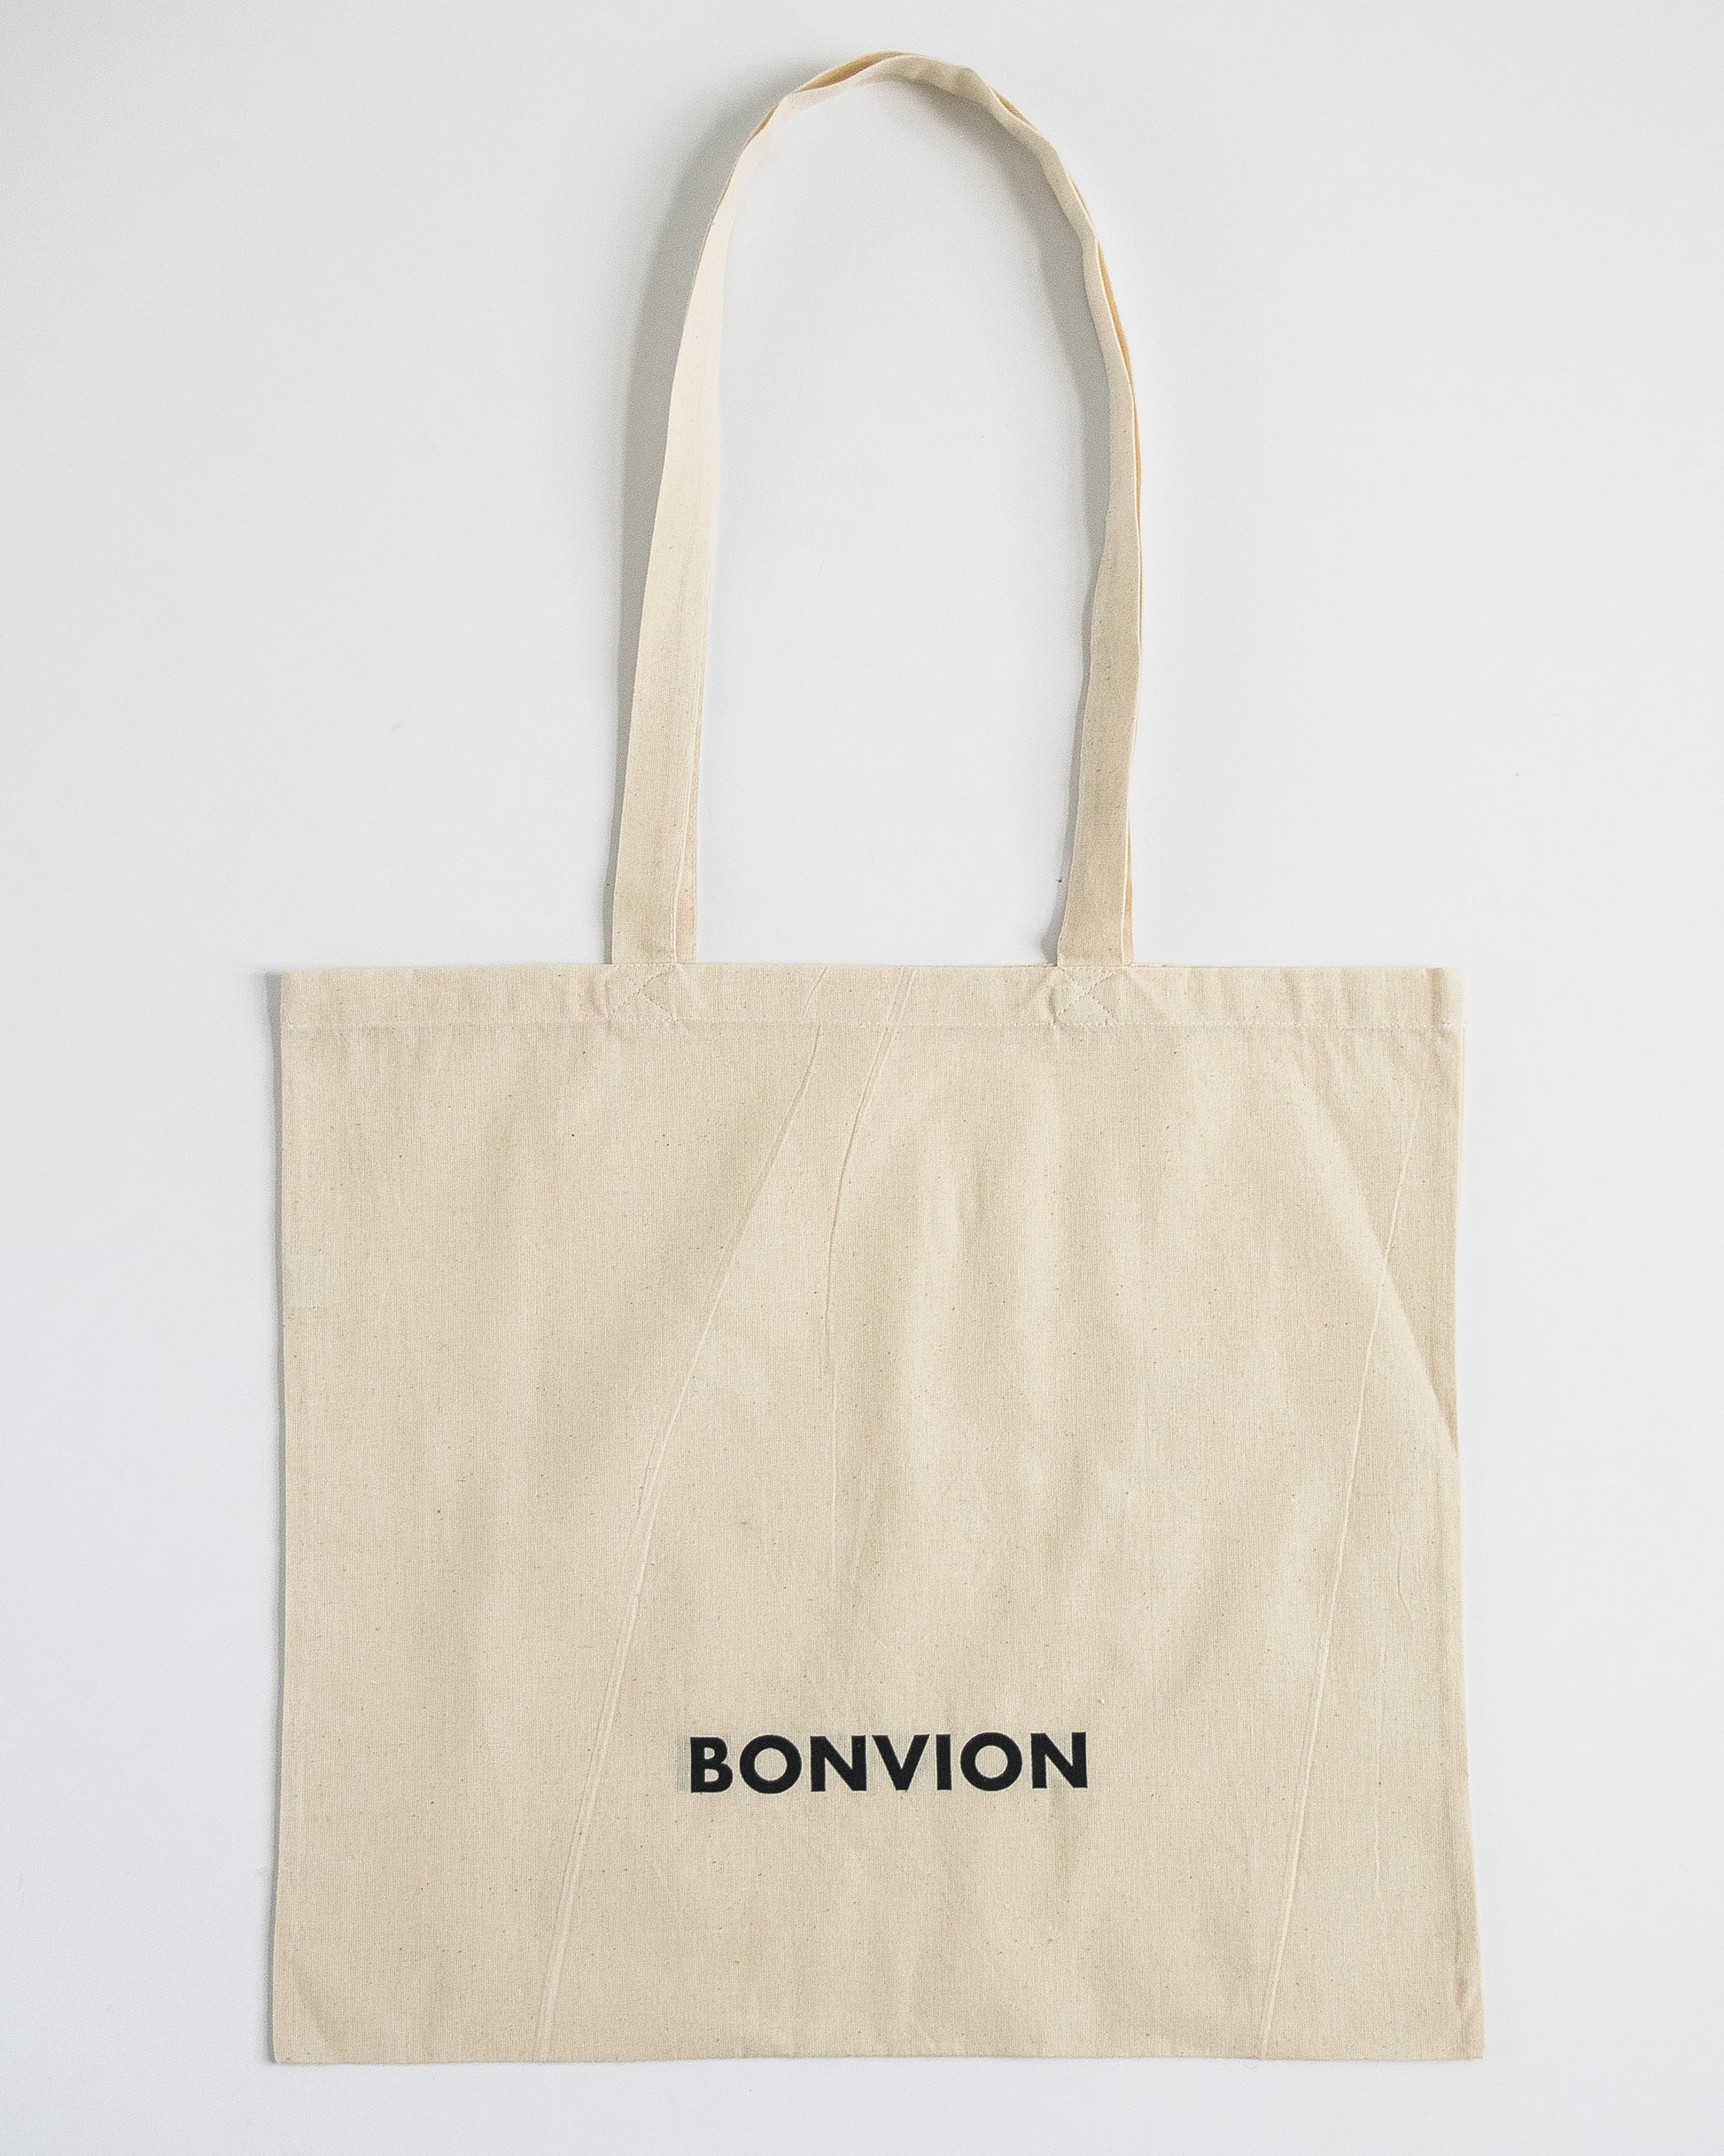 Bonvion logo printed large tote bag. Organic cotton tote bag. Beige tote bag. Canvas tote bag.